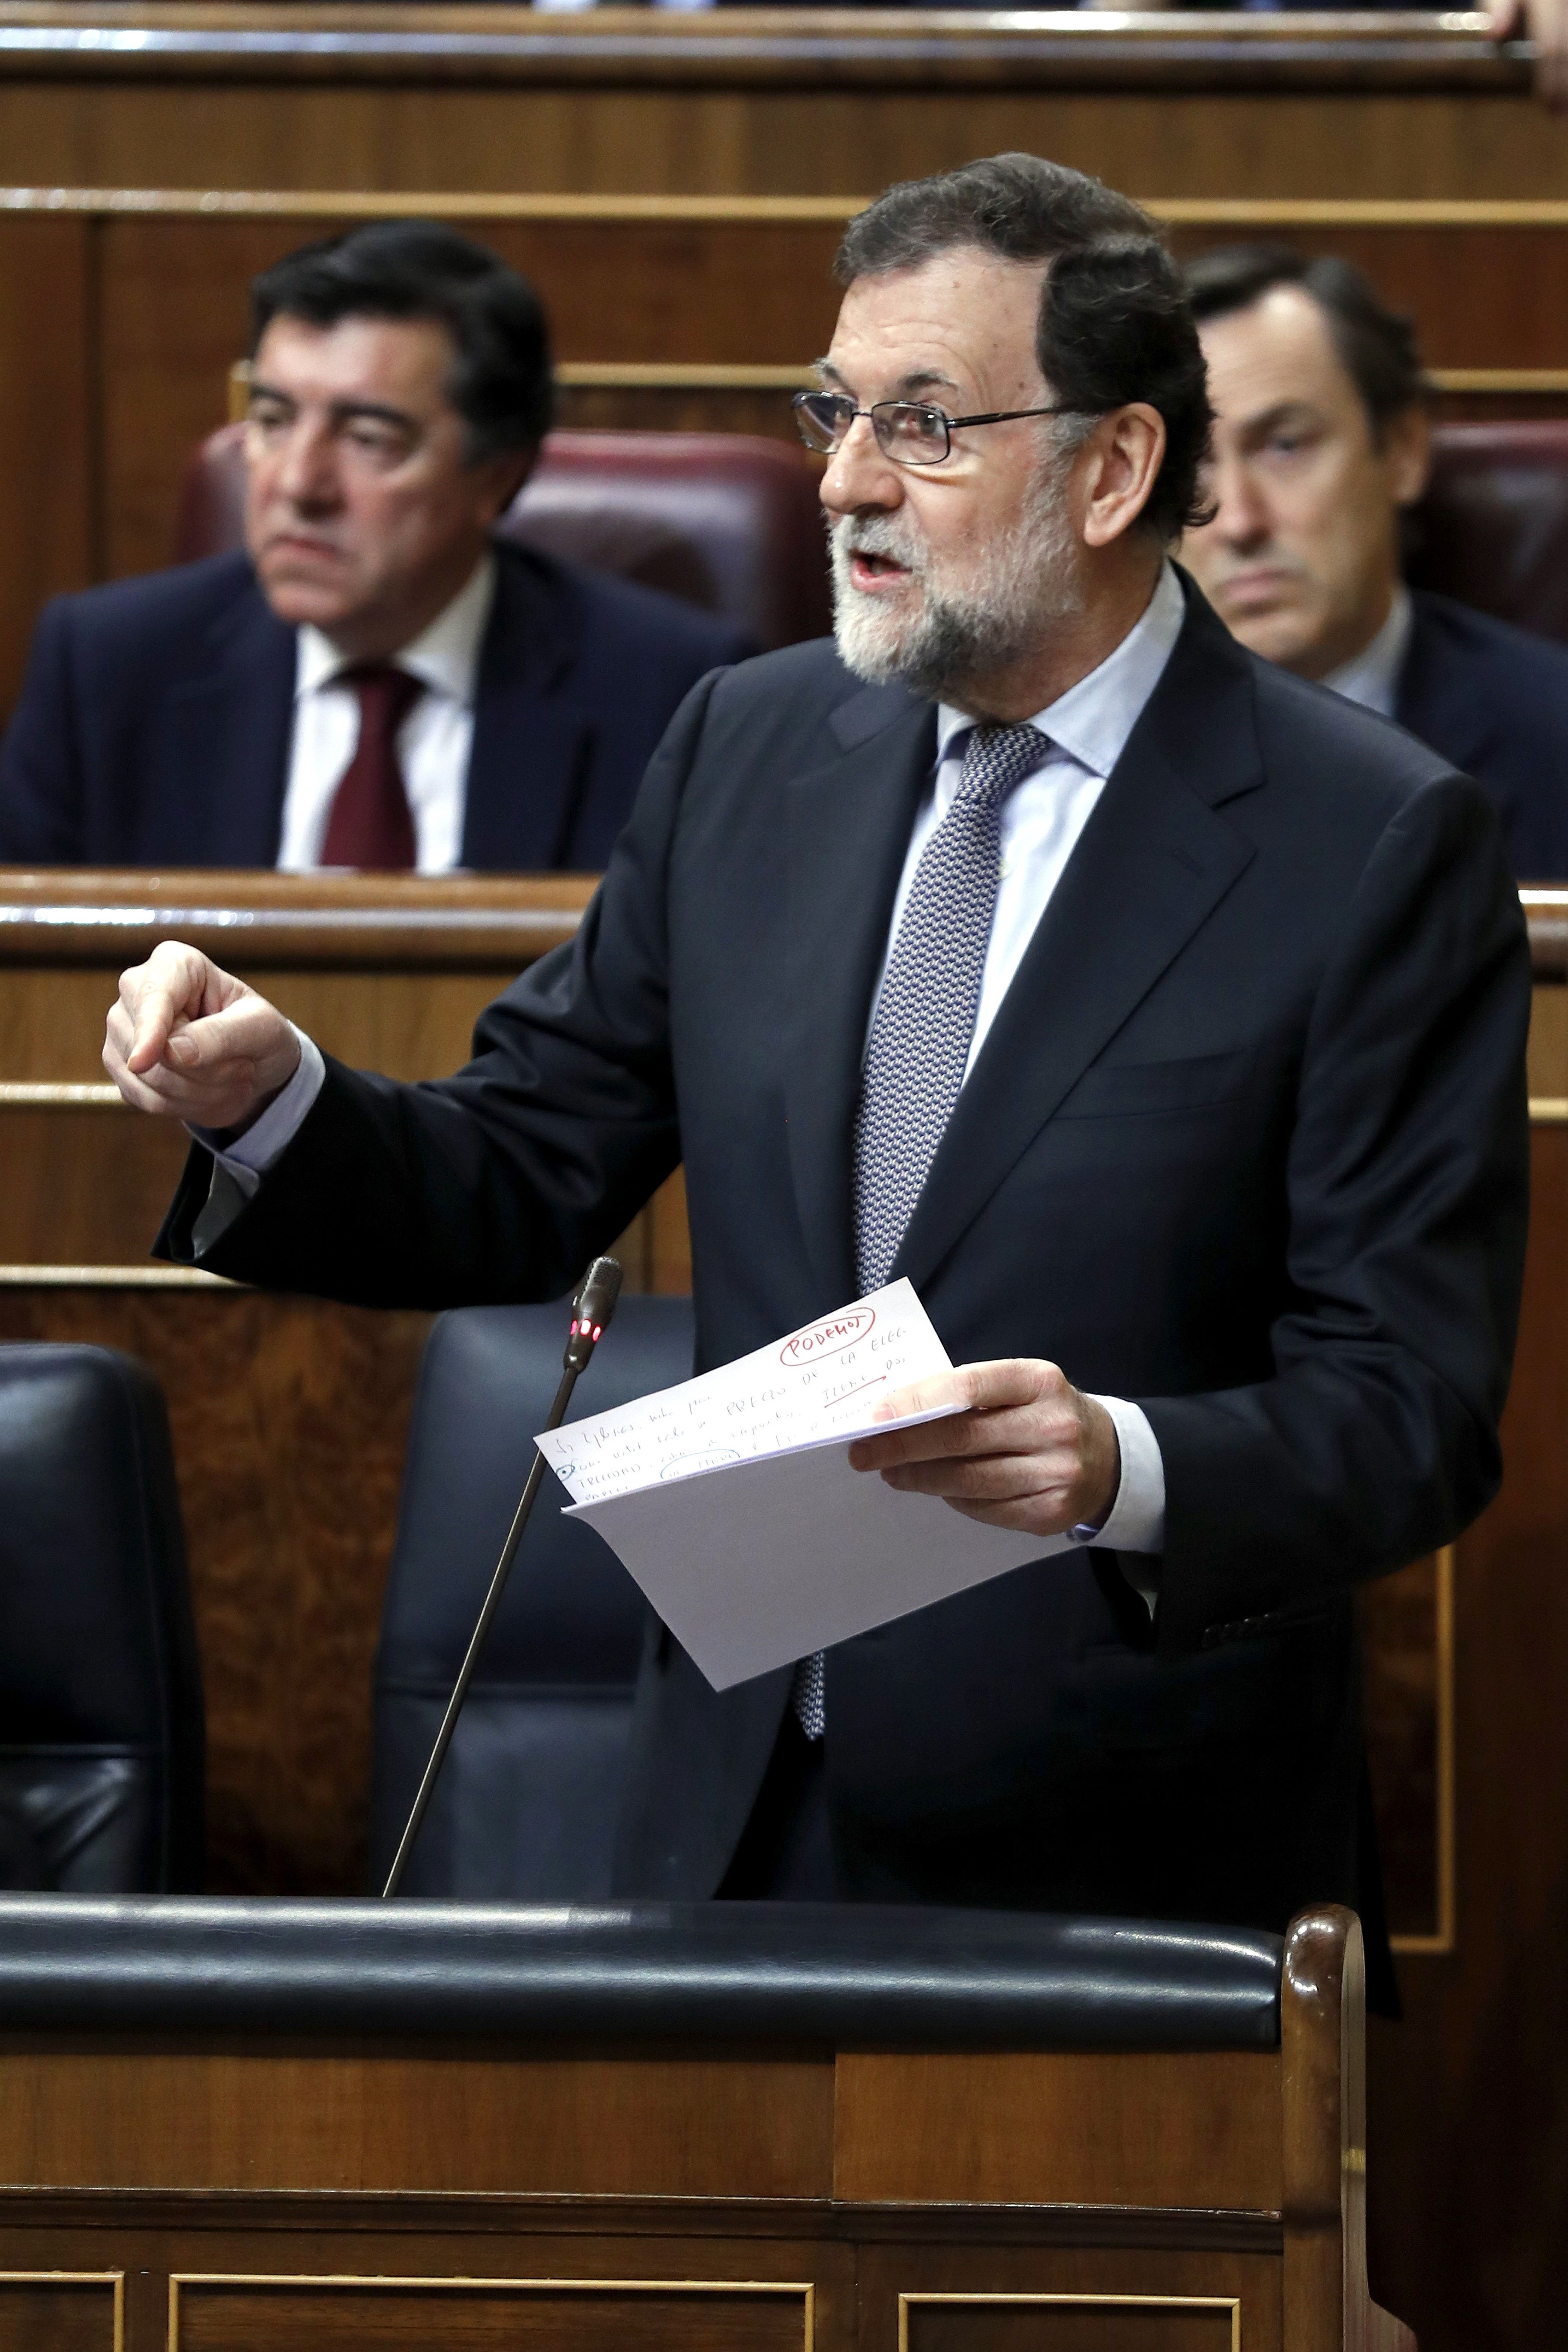 La declaración de intenciones de Rajoy sobre el 'procés' (y otras cuestiones)